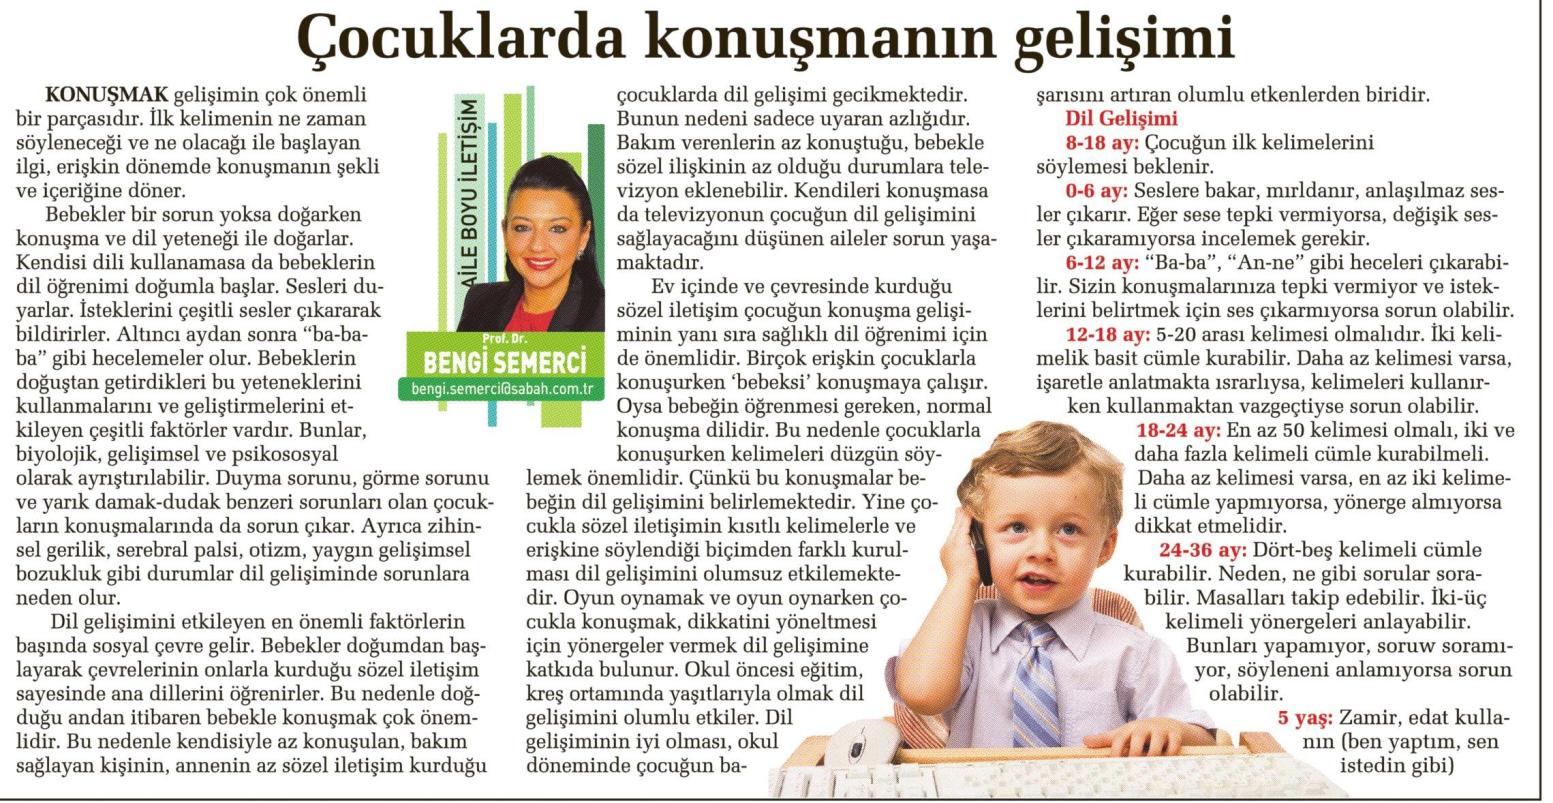 Çocuklarda konuşmanın gelişimi - SABAH CUMARTESİ 30.08.2014